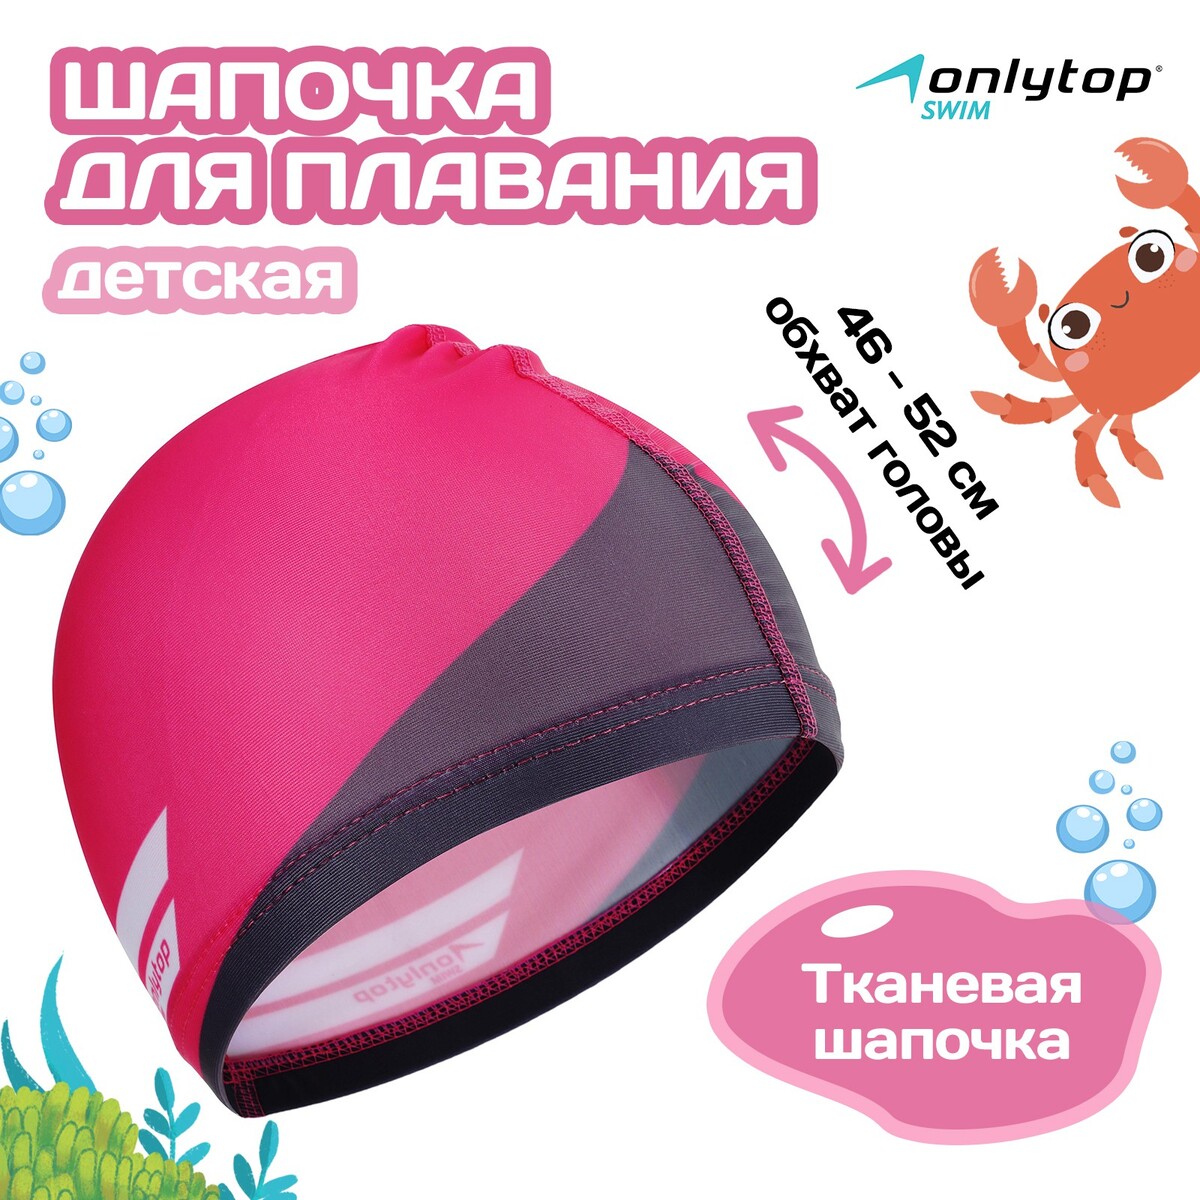 Шапочка для плавания детская onlitop swim, тканевая, обхват 46-52 см шапочка для плавания atemi тканевая с силиконовым покрытием сс102 розовый